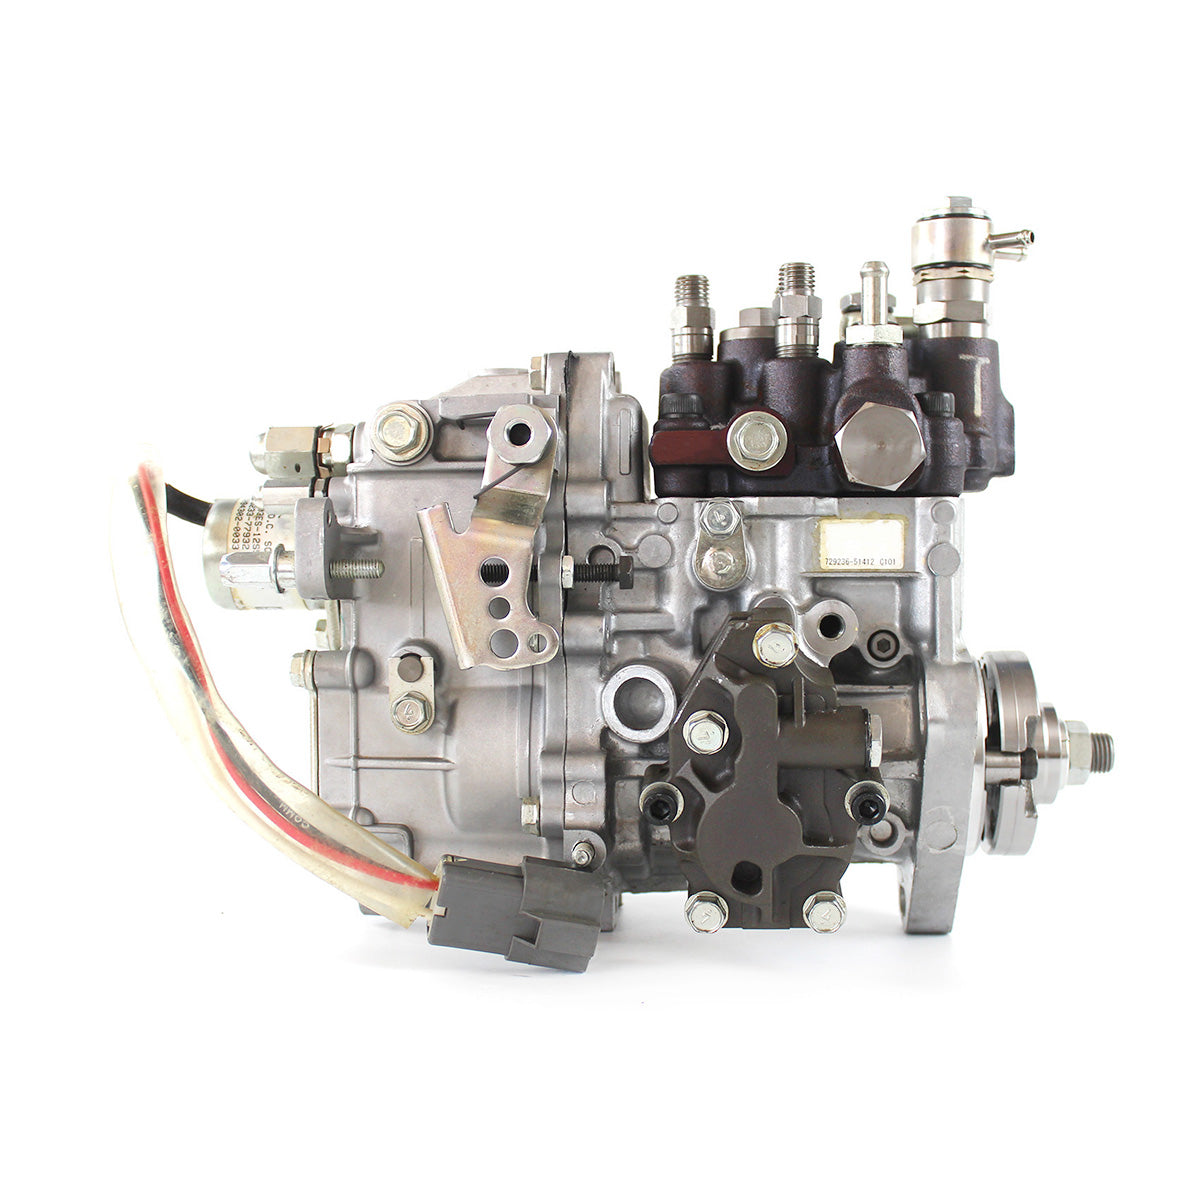 729236-51412 Pompe d'injection de carburant diesel pour le moteur Yanmar 3TNV88